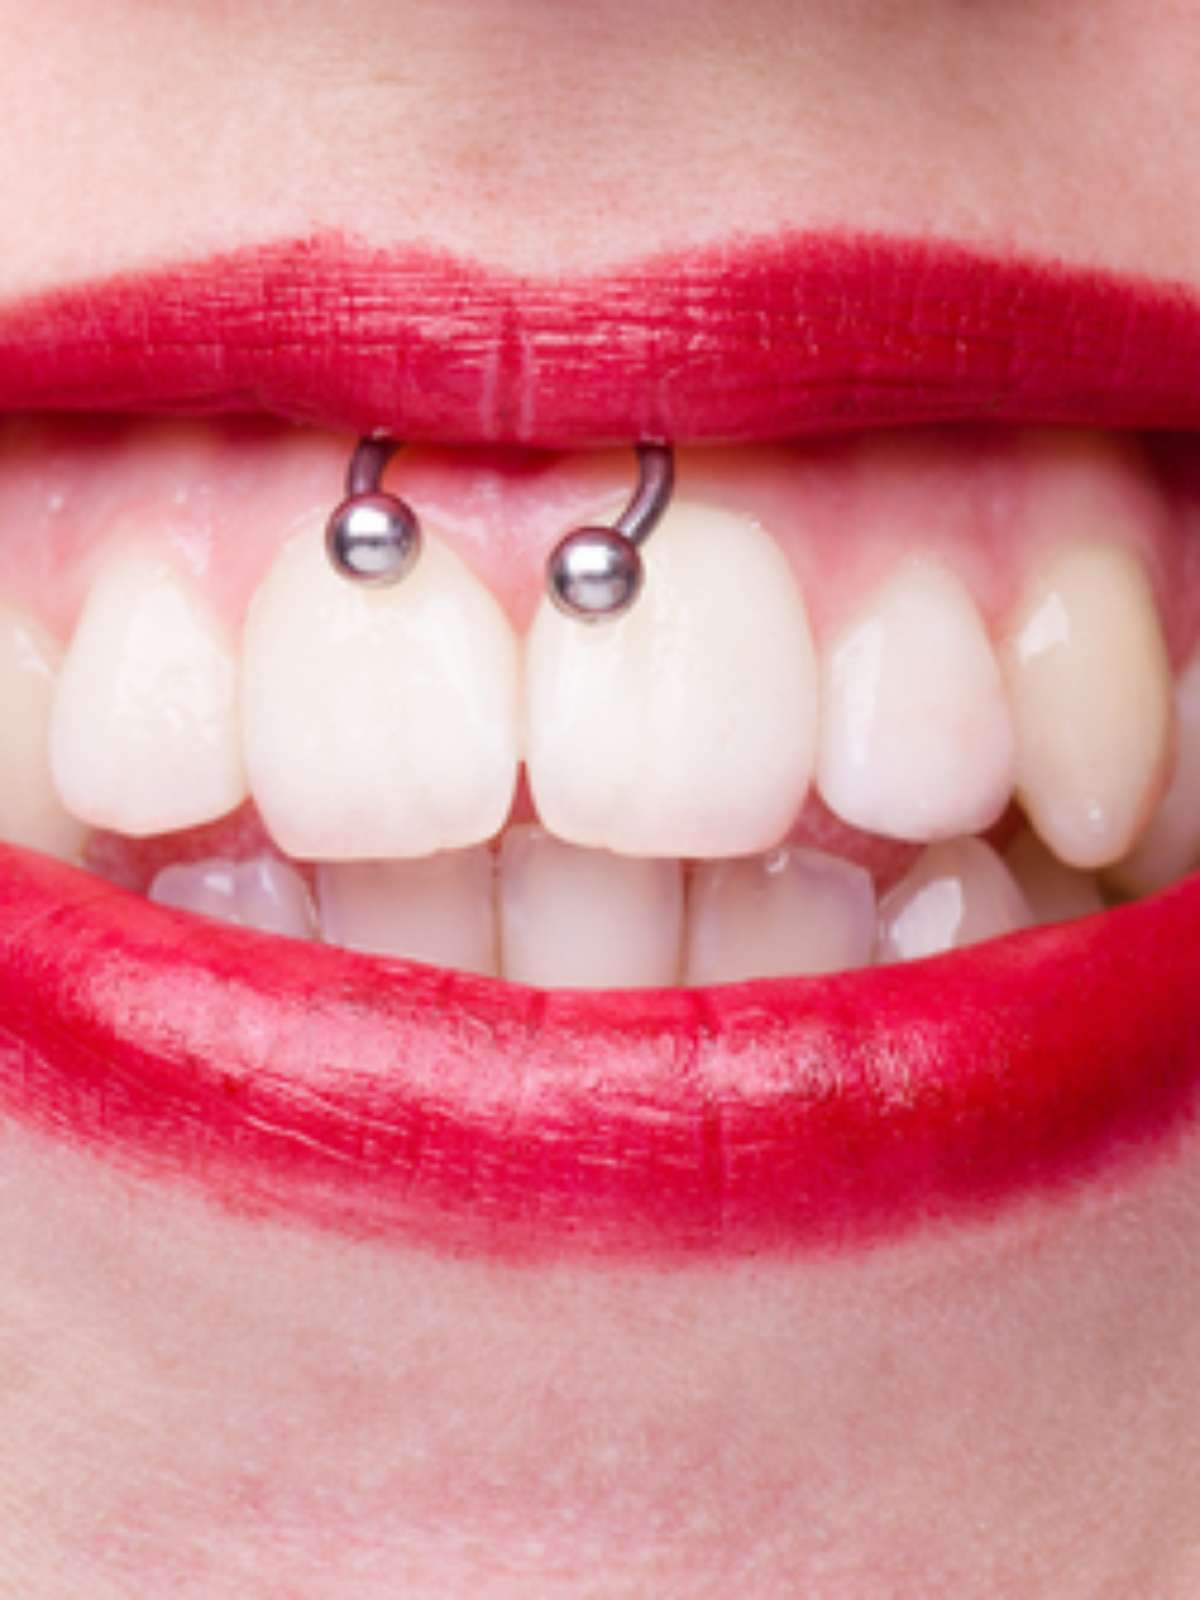 Tenho piercing na língua, posso colocar aparelho nos dentes?